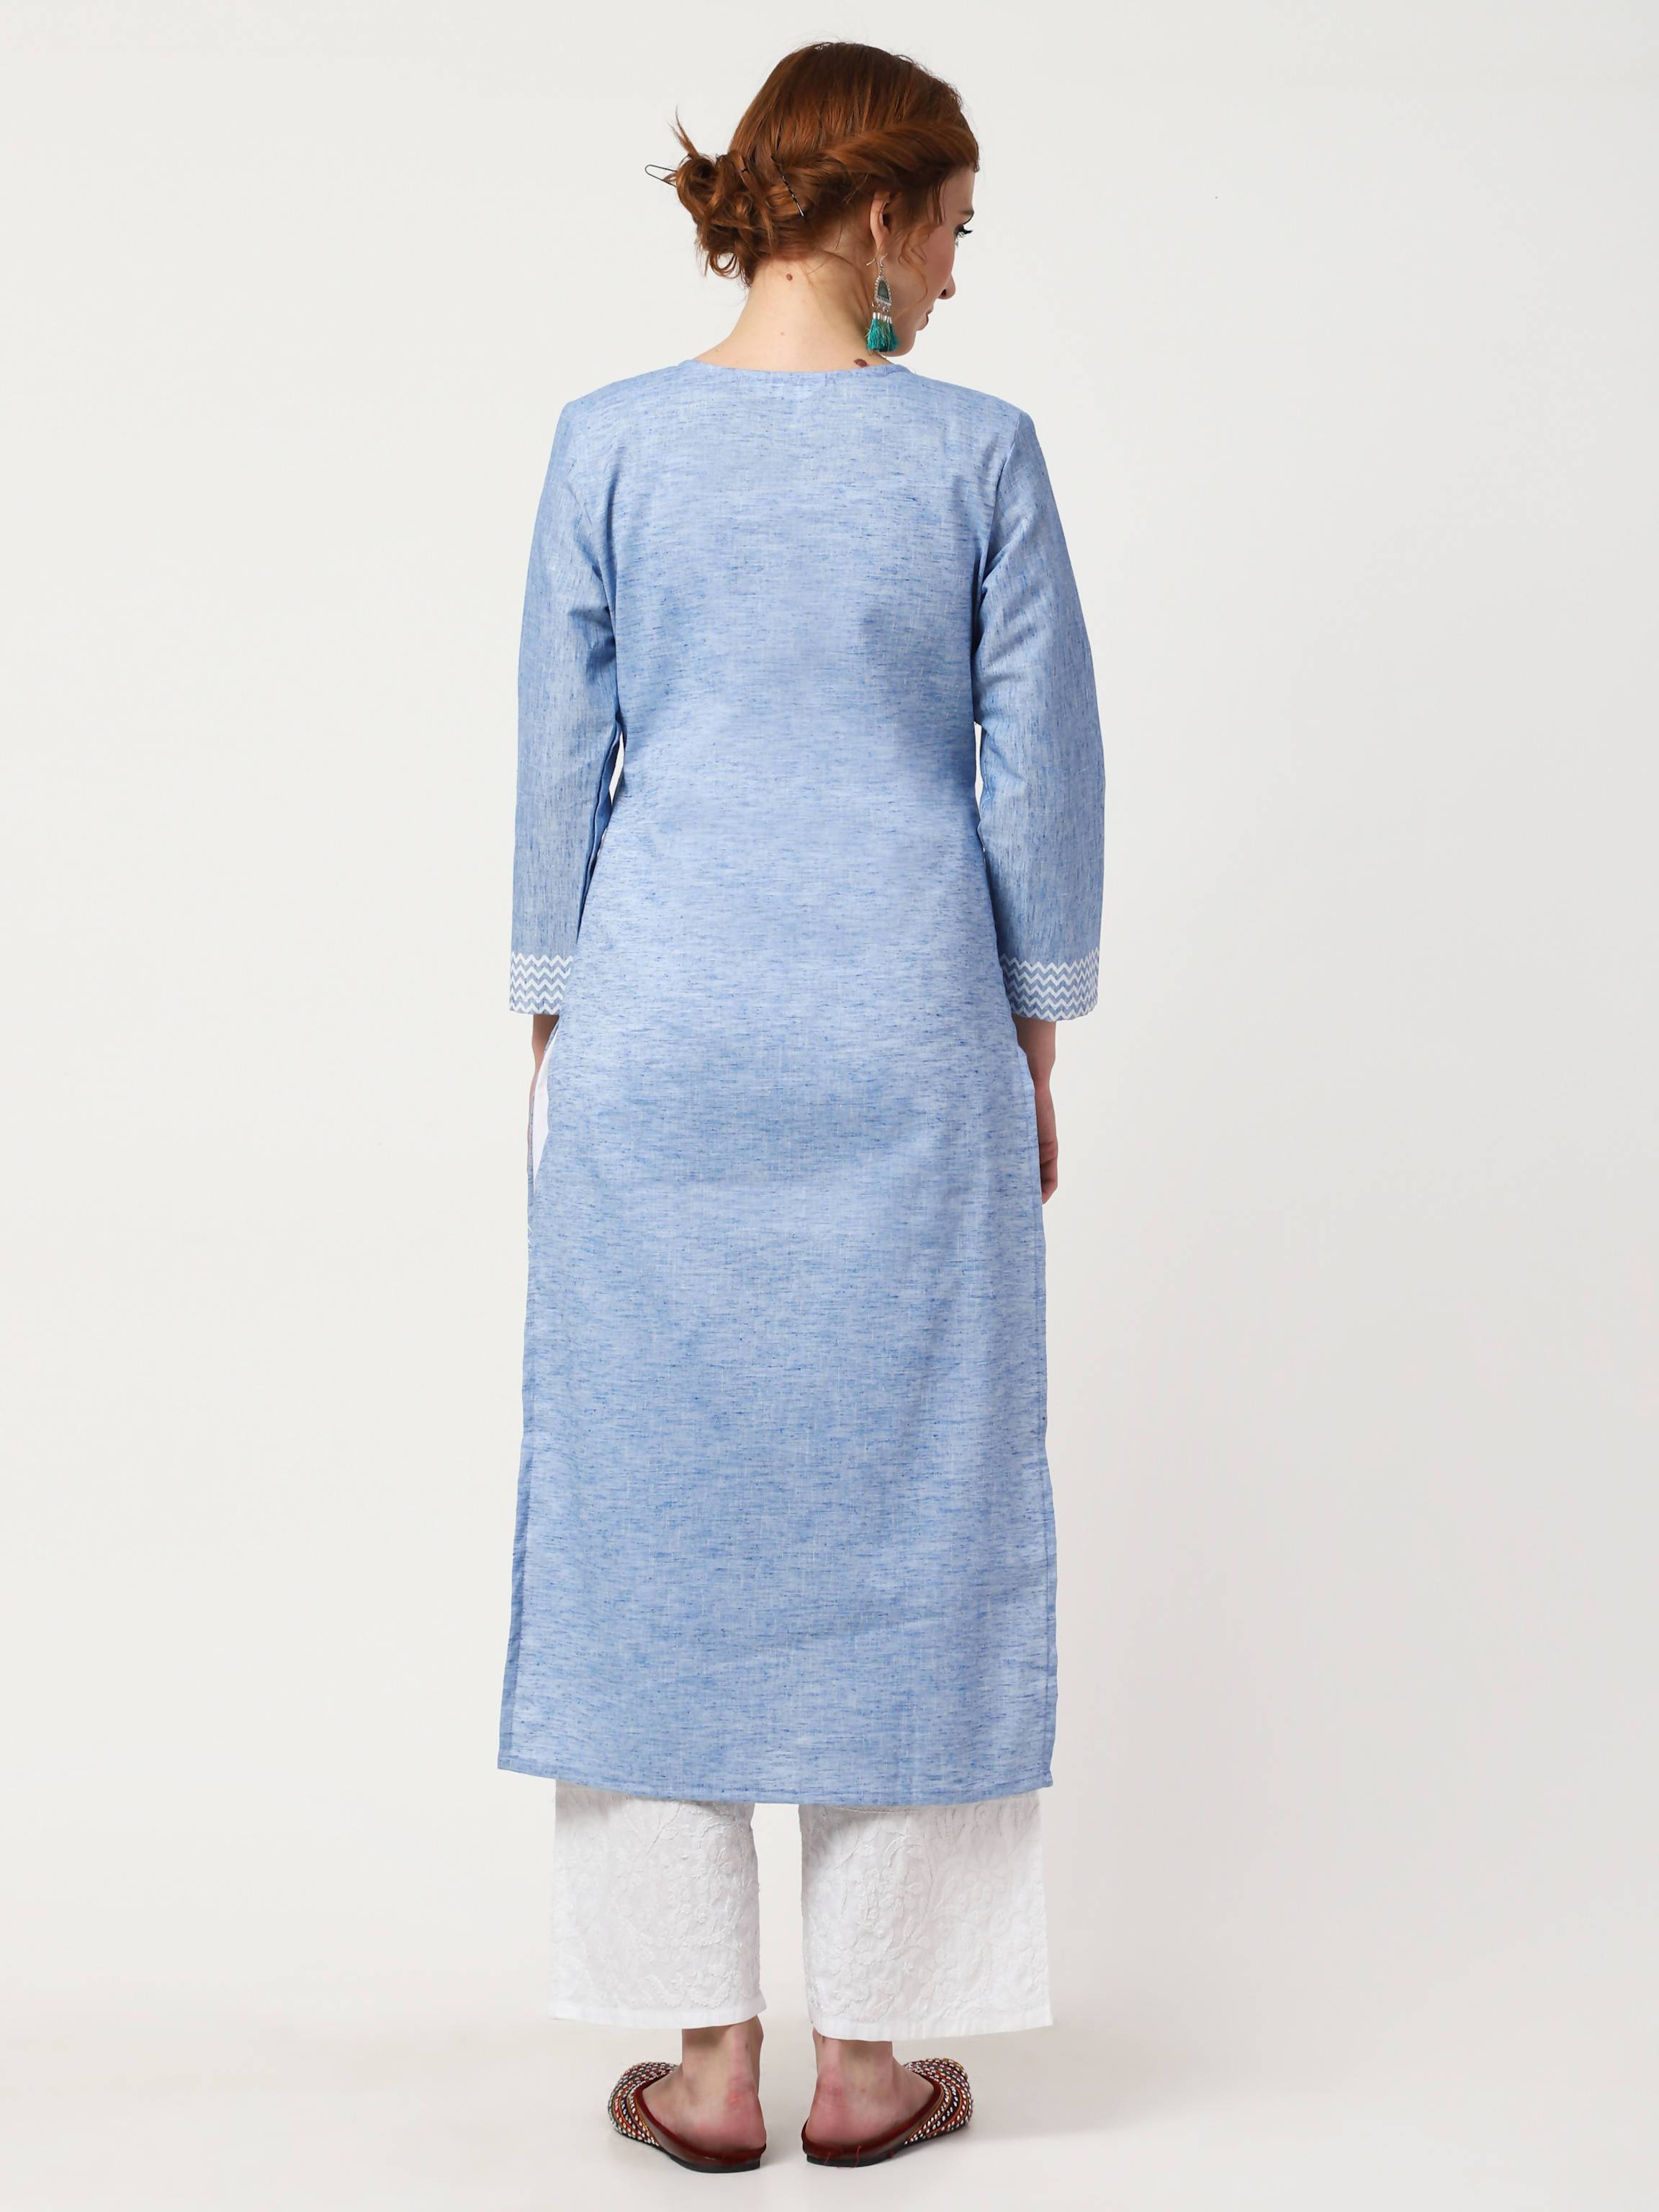 Women's Sky Blue & White Khadi Cotton Kurta With Chikankari Palazzo & Embroidered Dupatta Set - Cheera